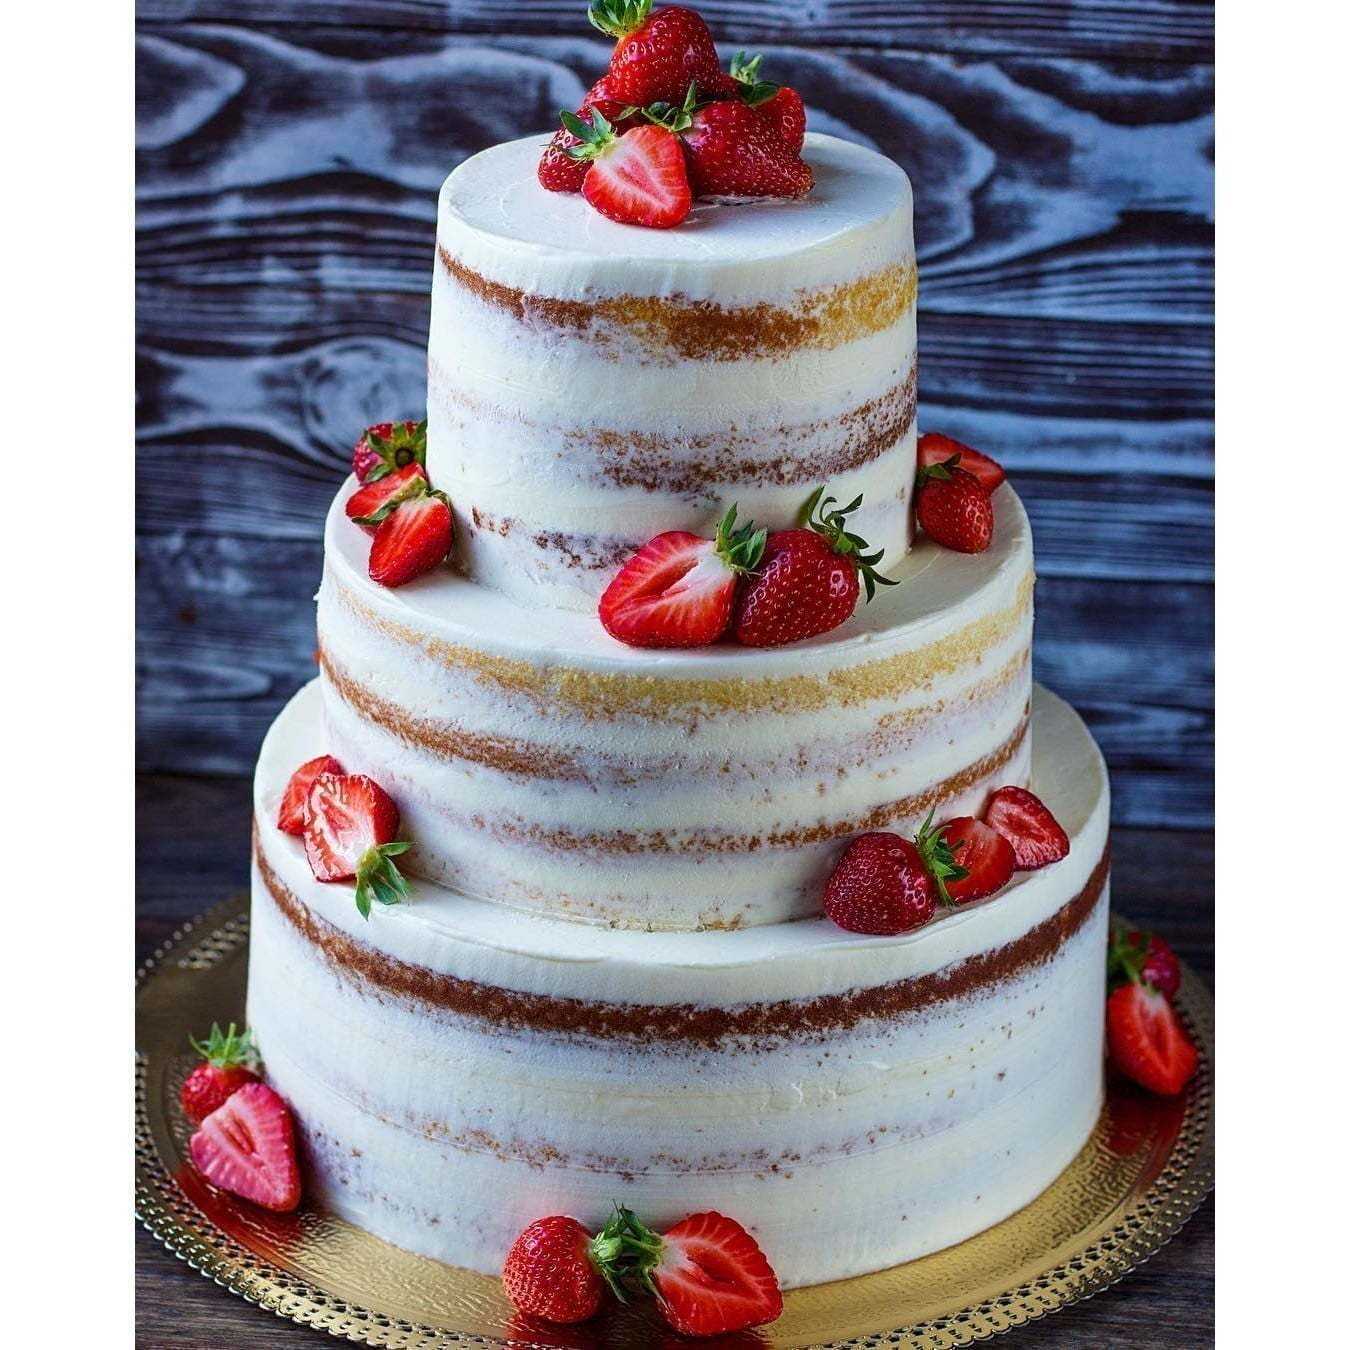 Начинки для тортов 🥗 как выбрать лучшие, идеальный торт на свадьбу